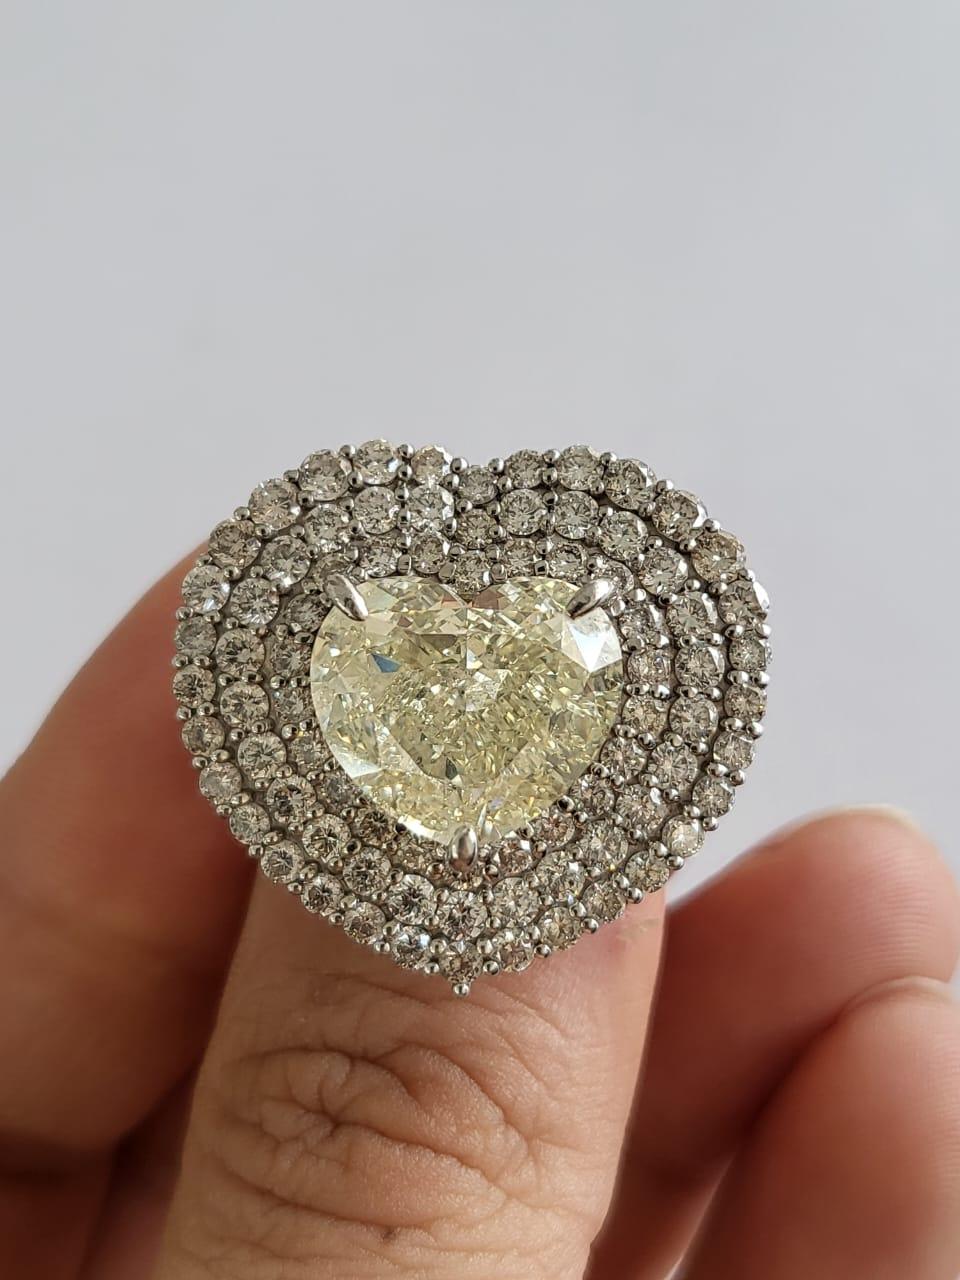 Une bague de fiançailles en diamants très spéciale et unique en son genre, sertie de PT900 et de diamants. Le poids du diamant central en forme de cœur est de 10,01 carats. Le diamant est de couleur N et de qualité VS2. Les dimensions du cœur